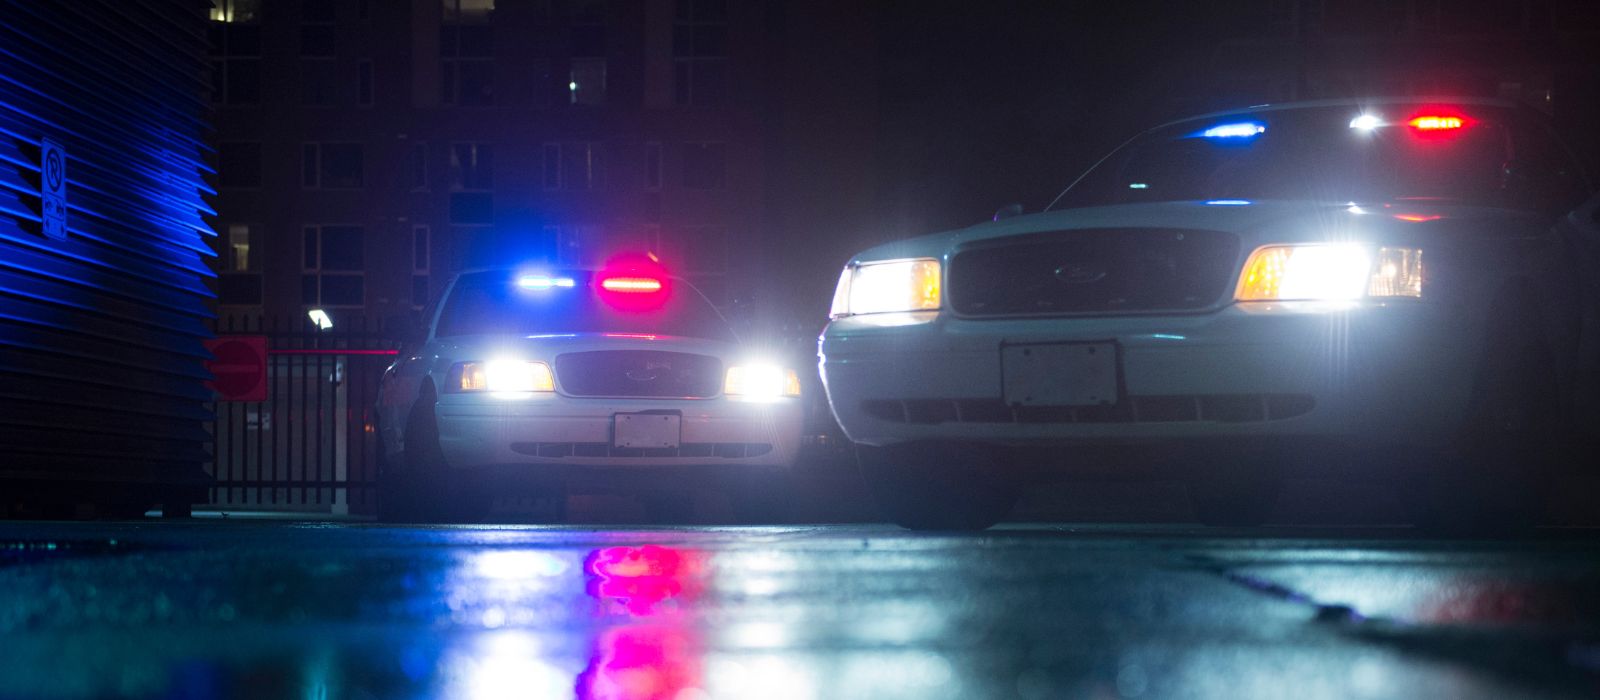 Deux voitures de police avec leurs feux allumés devant un immeuble d'habitation, la nuit.